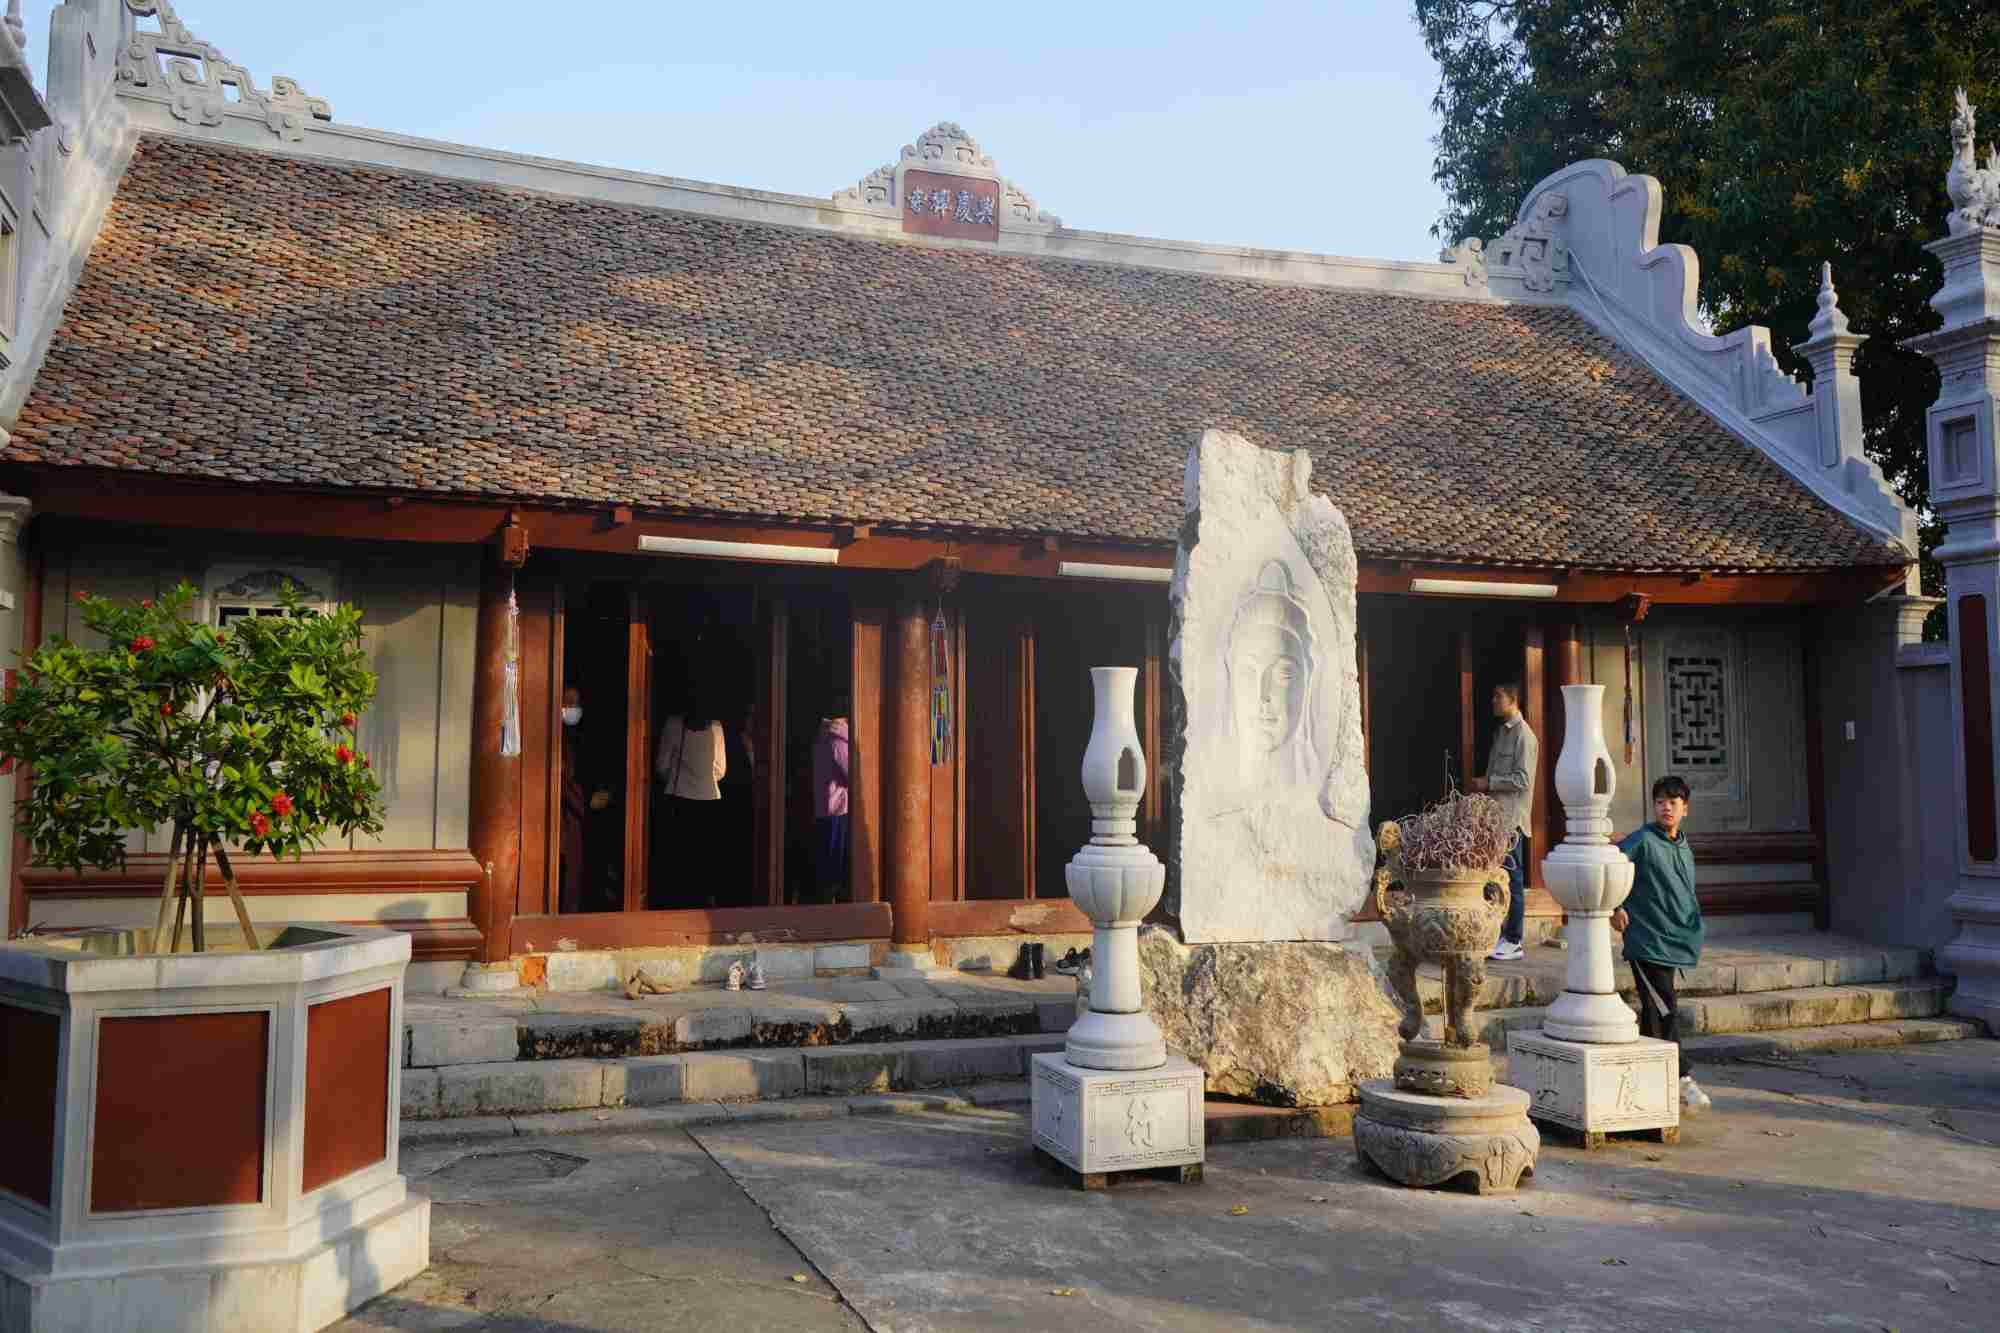 hùa Trung Hành còn bảo lưu khá hoàn chỉnh về bố cục các công trình kiến trúc và quy hoạch không gian của một ngôi chùa làng thời Mạc điển hình ở Hải Phòng.